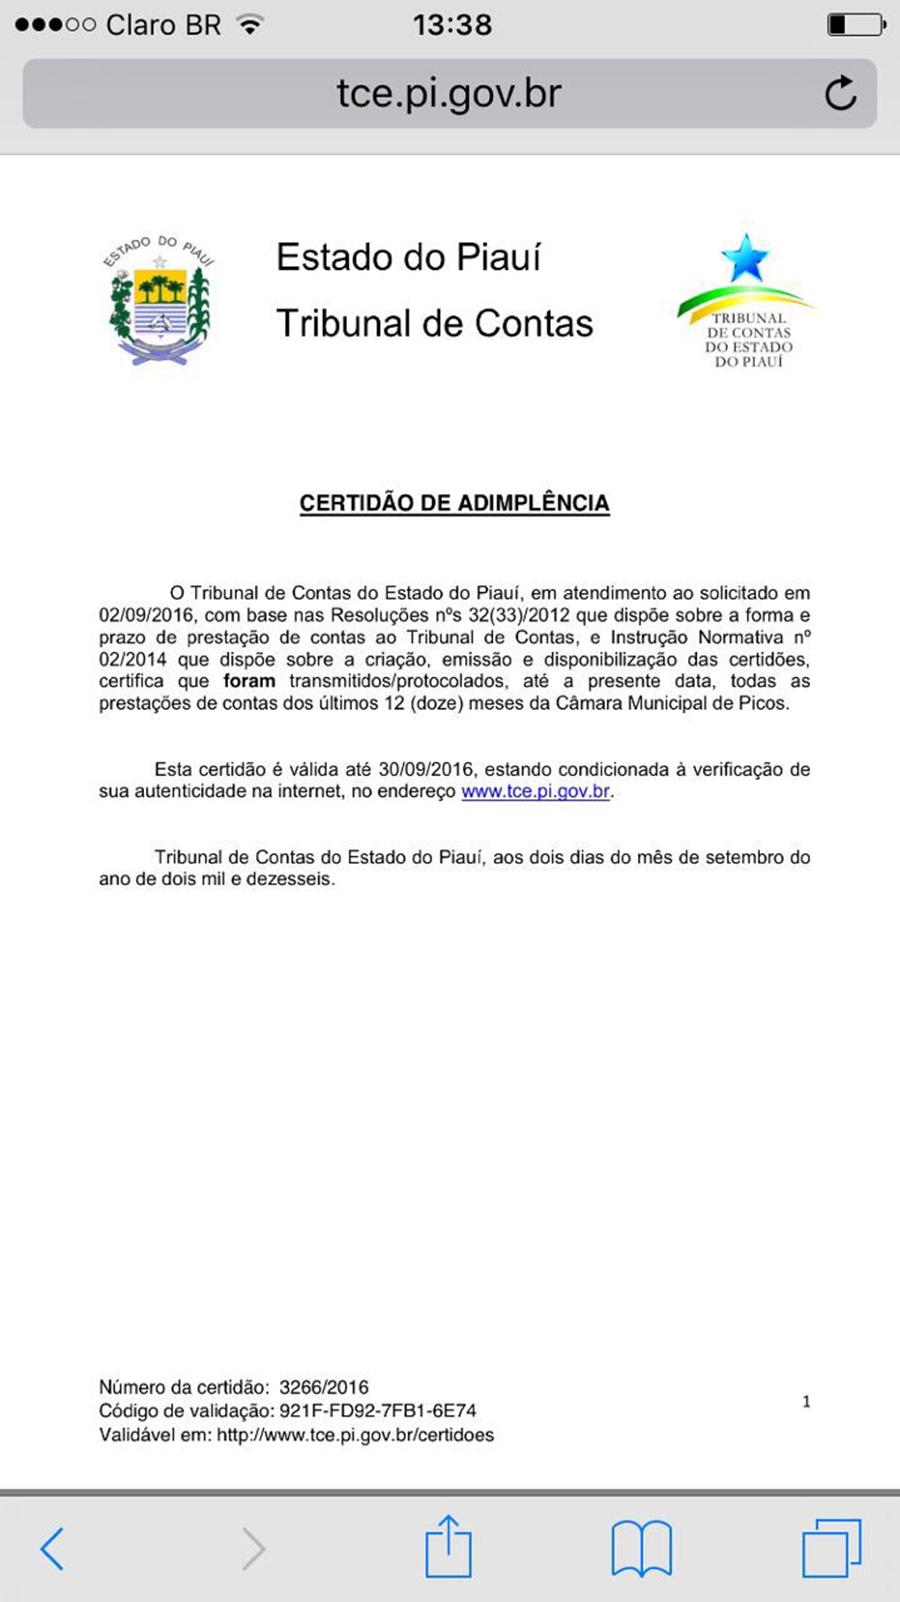 Certidão de adimplência da Câmara Municipal de Picos